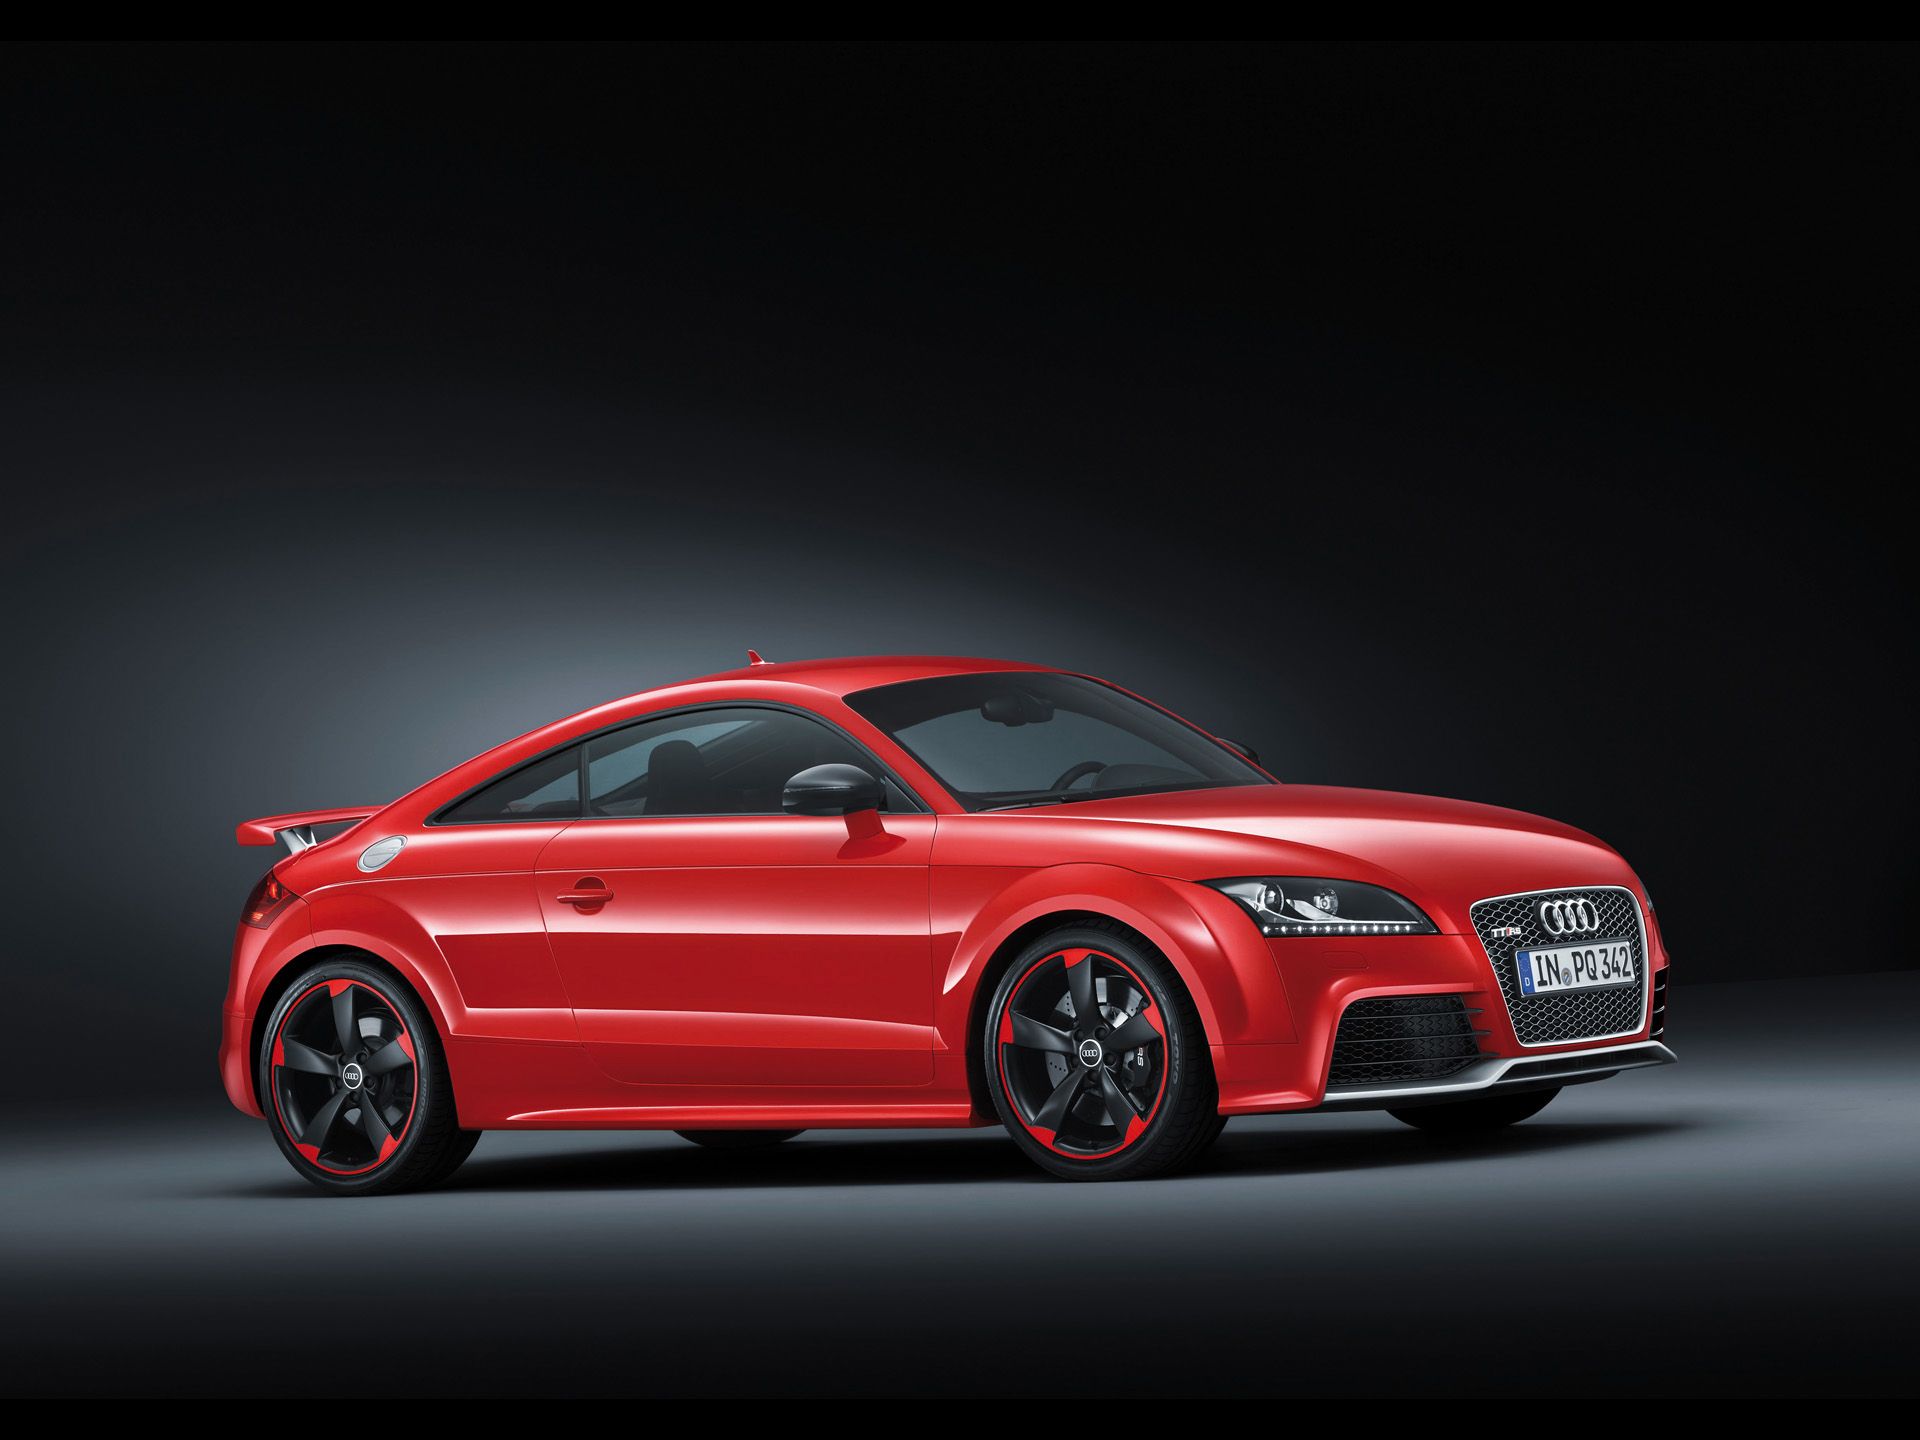 Fonds d'écran Audi Tt Rs : tous les wallpapers Audi Tt Rs